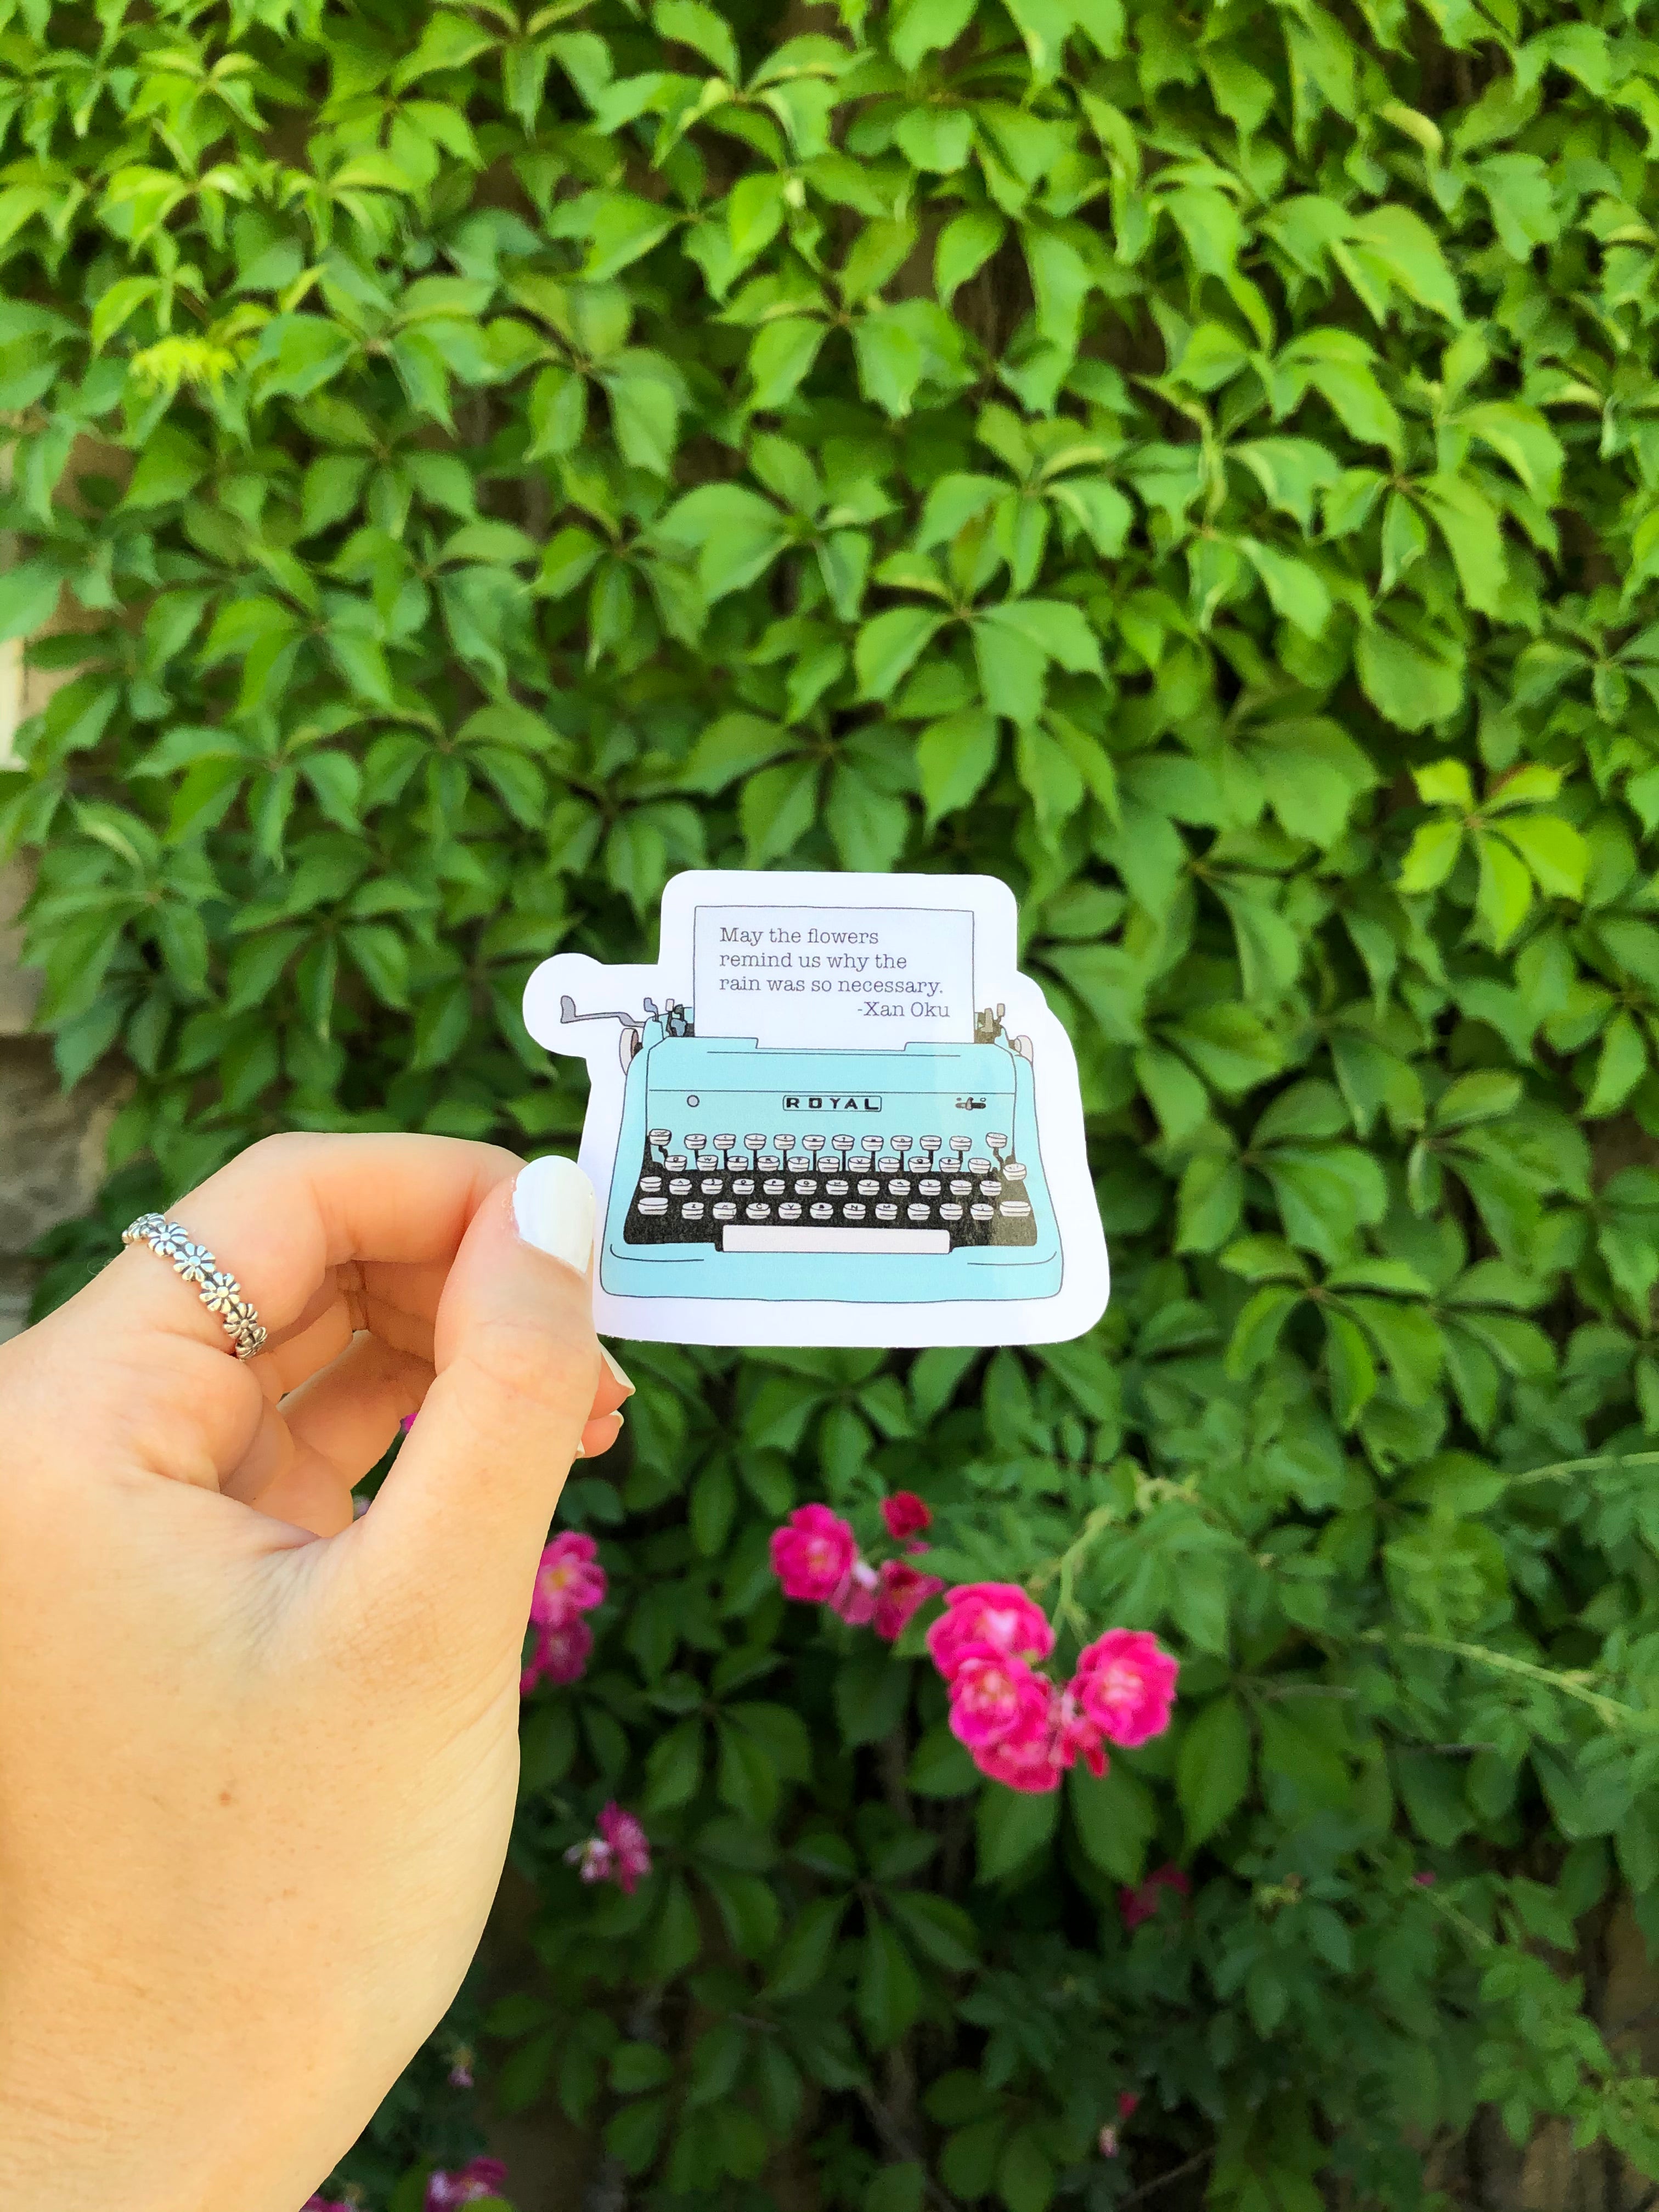 Typewriter Sticker